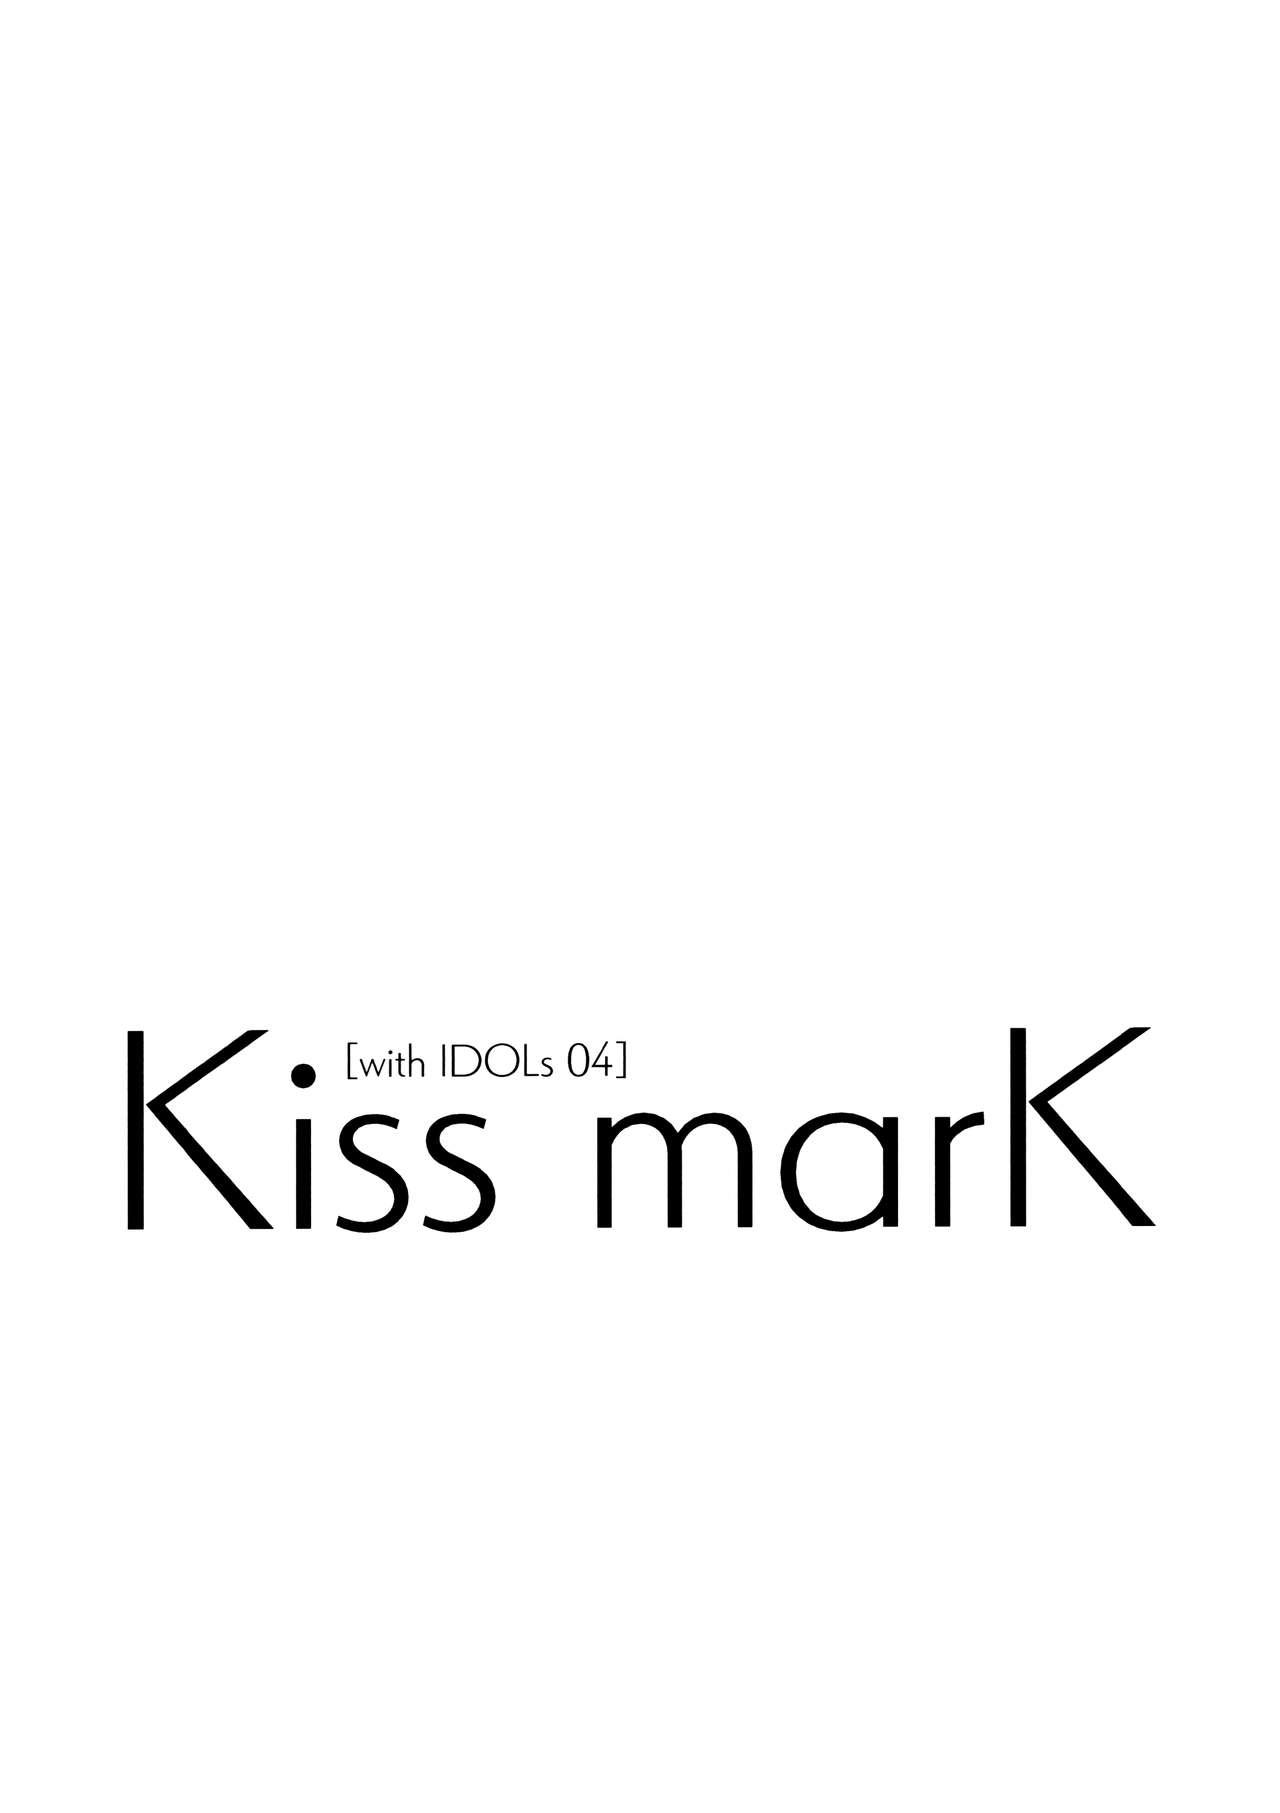 Kiss marK 2